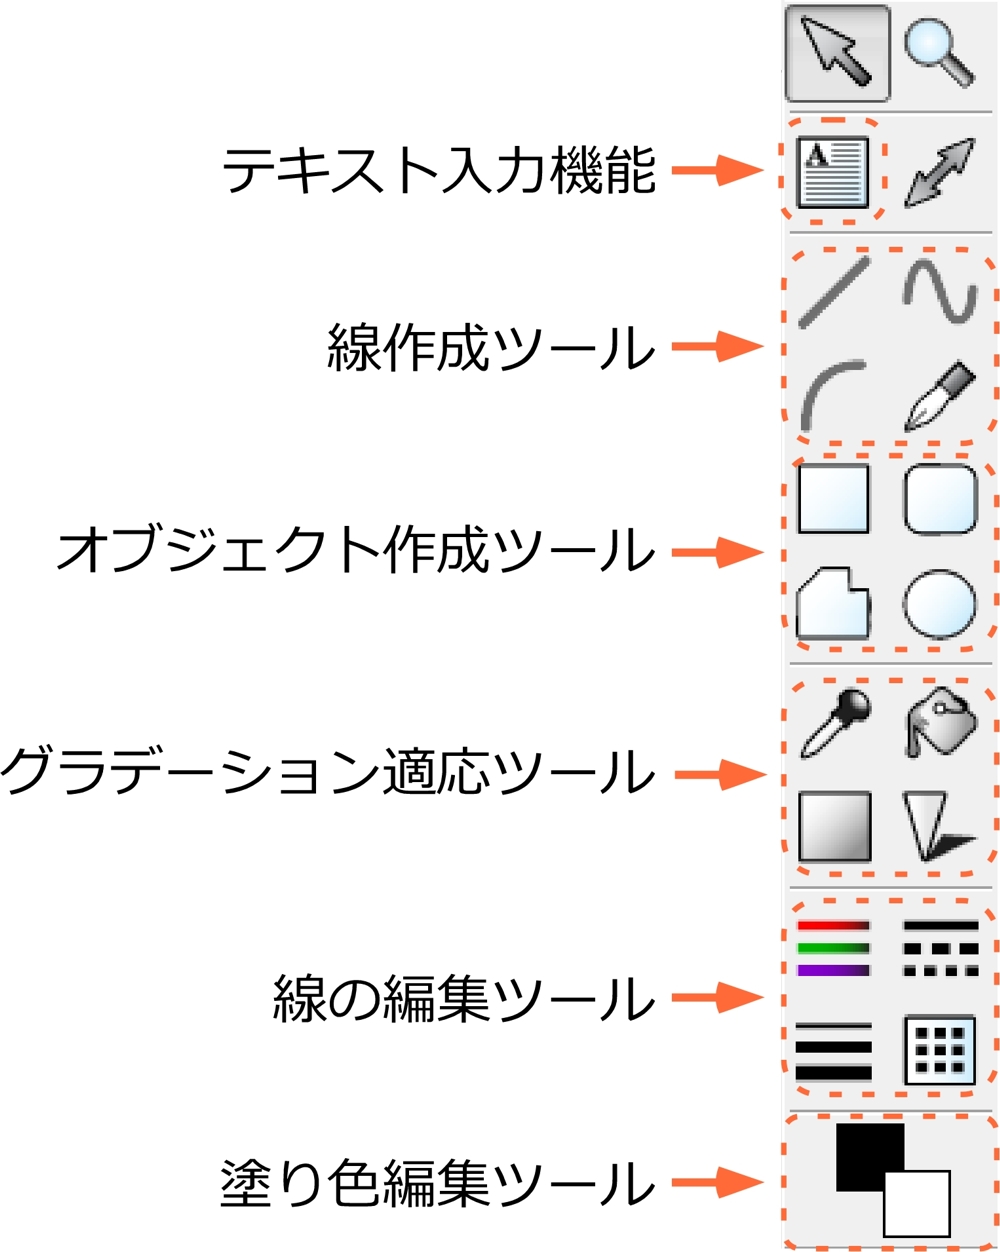 グラフ編集機能1 Deltagraph グラフ作成ソフト 日本ポラデジタル株式会社